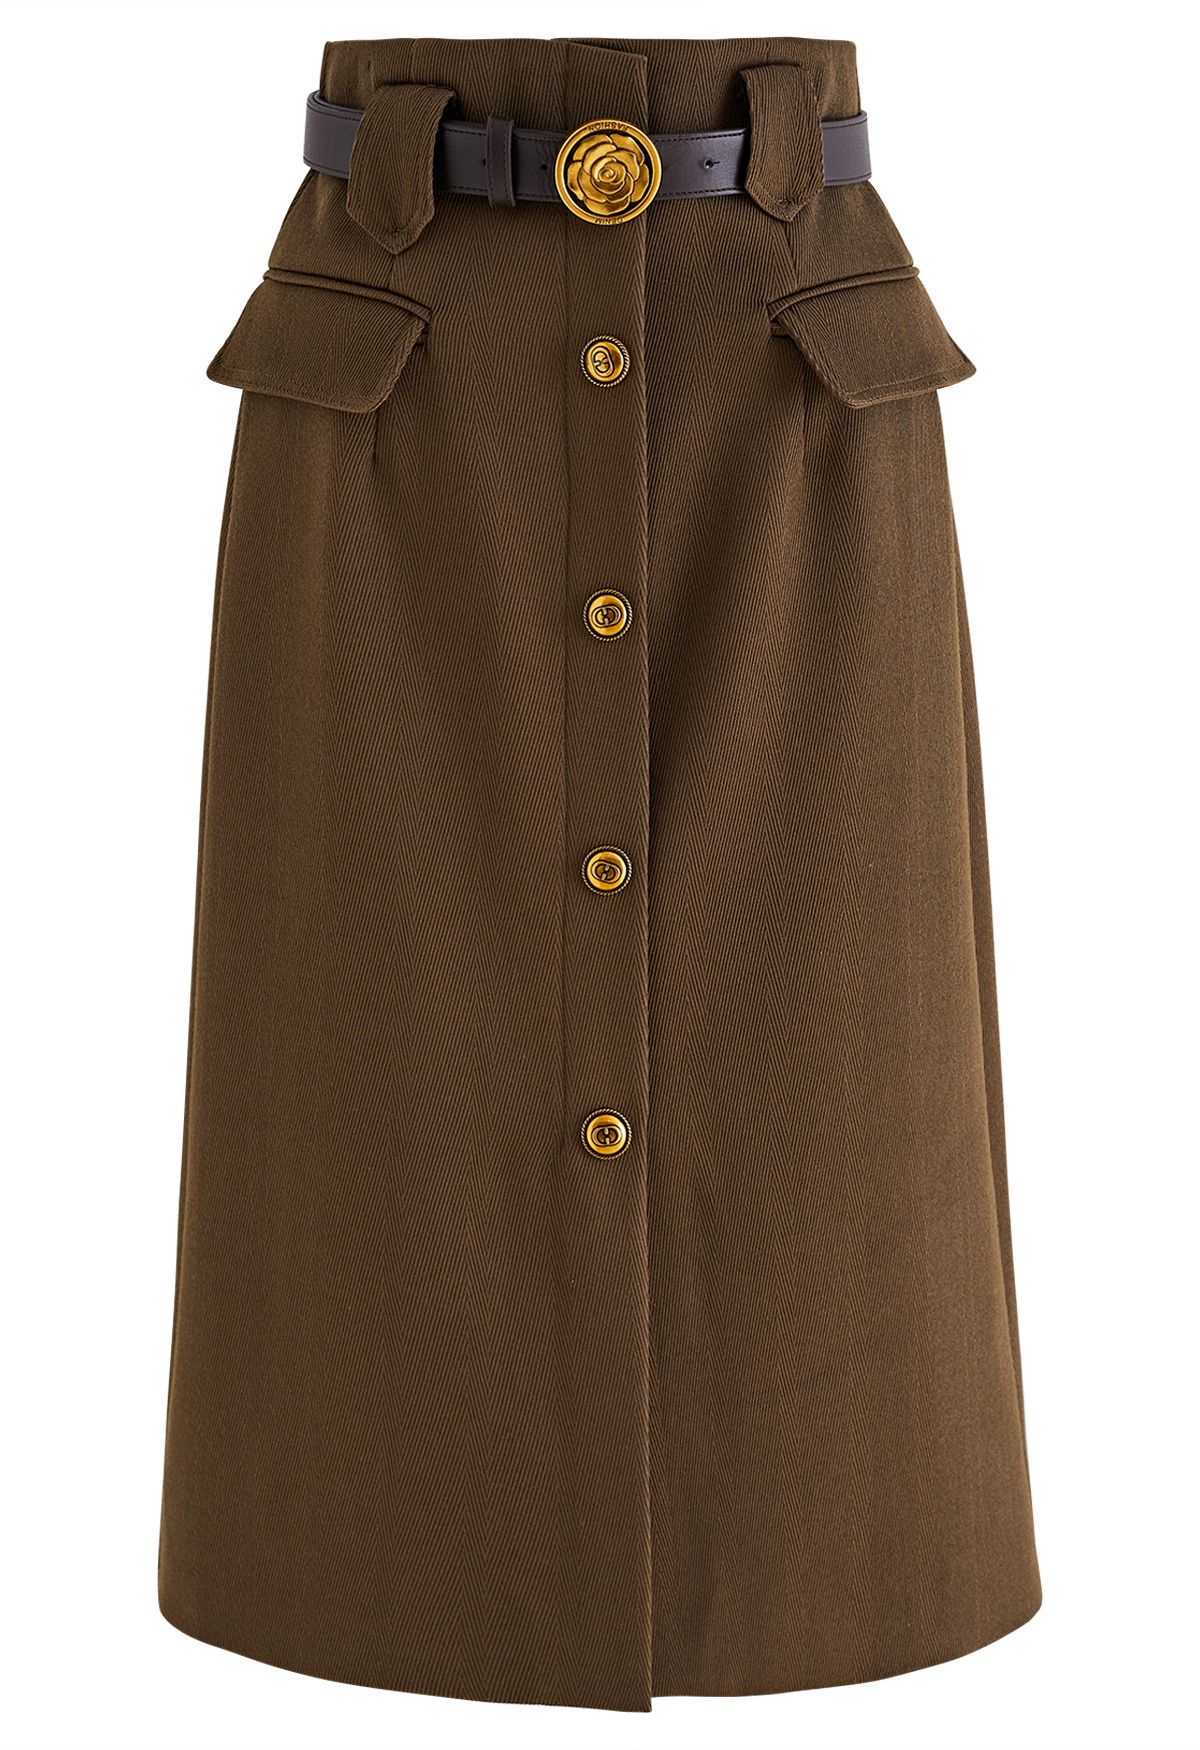 Vintage Button Flap Pocket Midi Skirt in Khaki